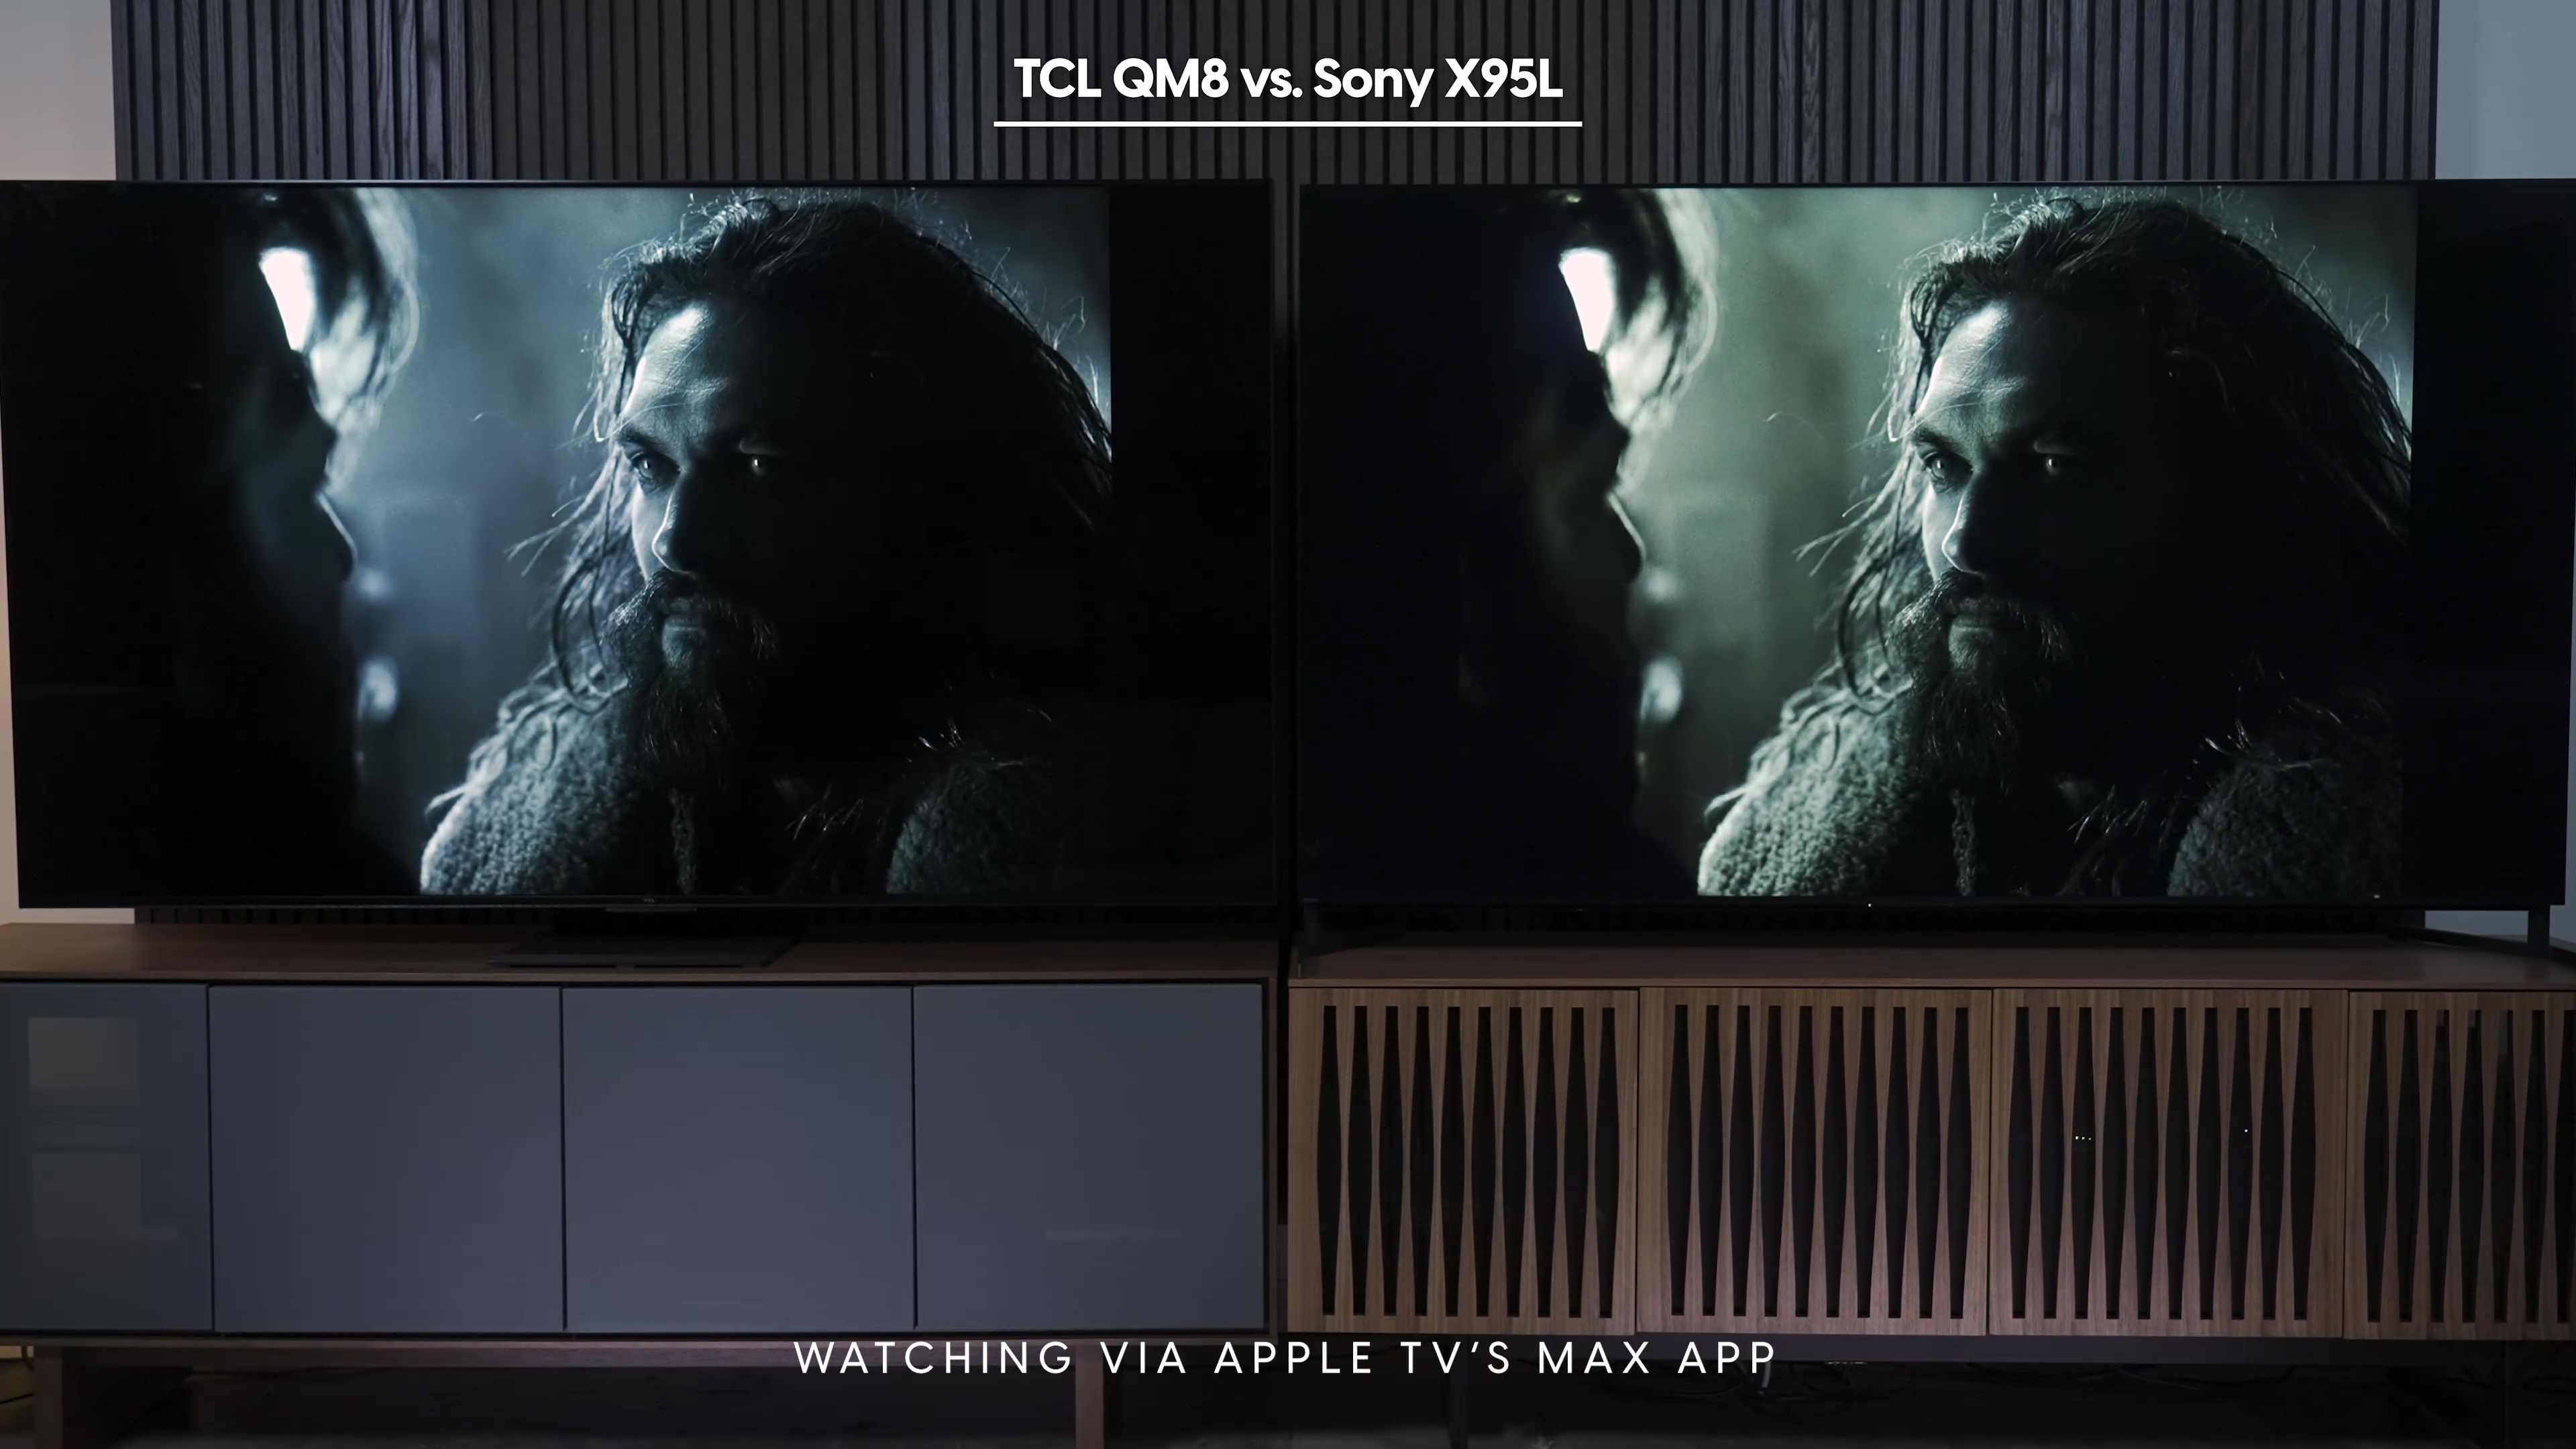 Comparação lado a lado de uma captura de tela da Liga da Justiça vista no aplicativo AppleTV Max no Sony Bravia X95L vs TCL QM8.